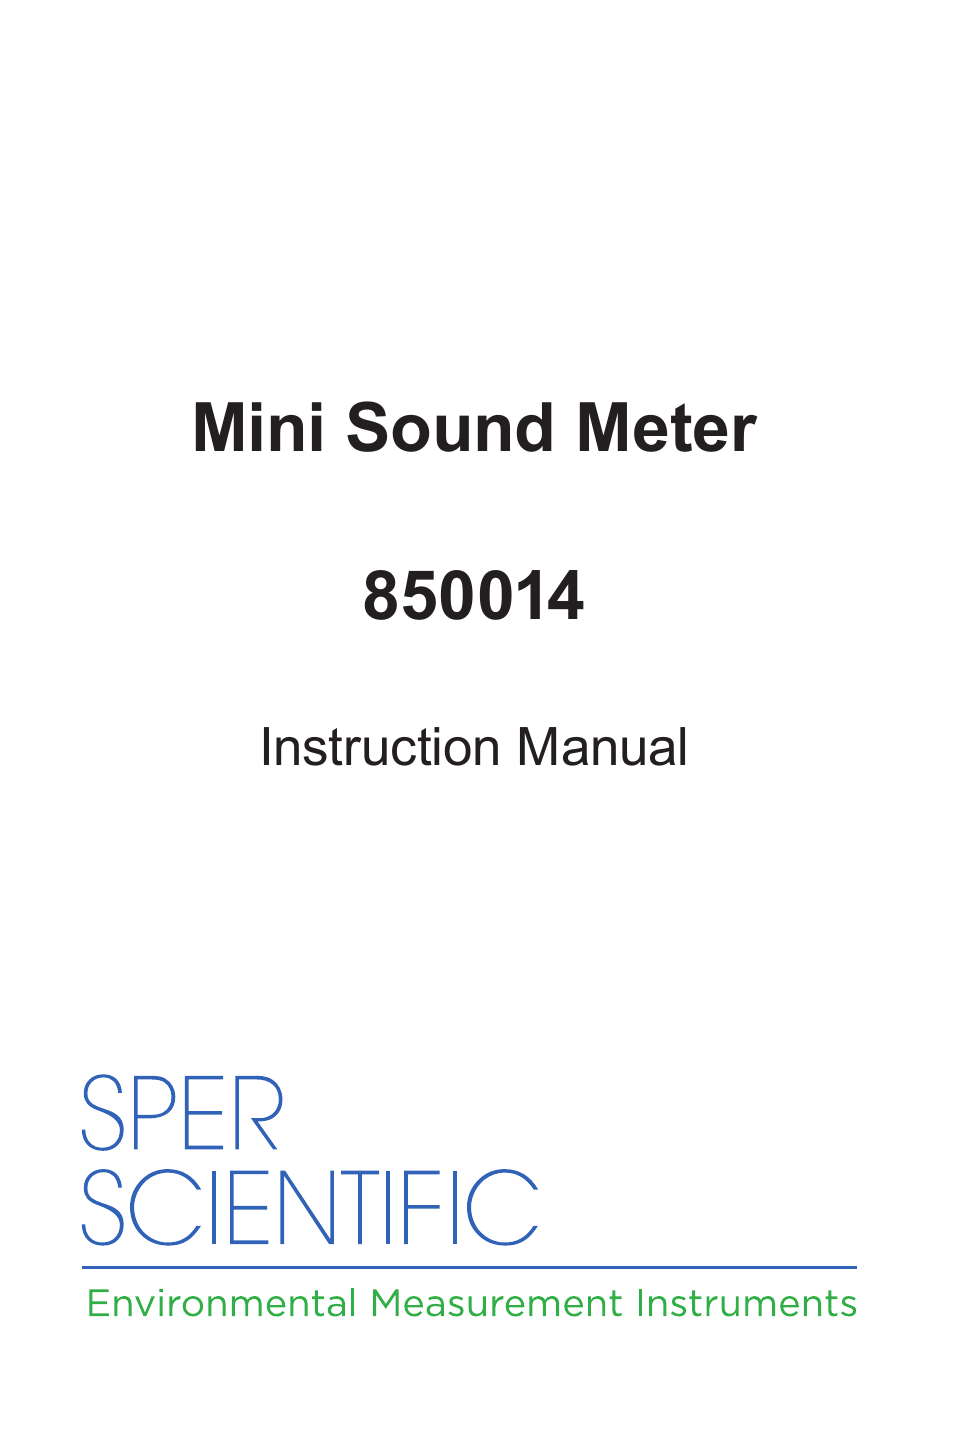 850014 Sound Level Meter - Mini